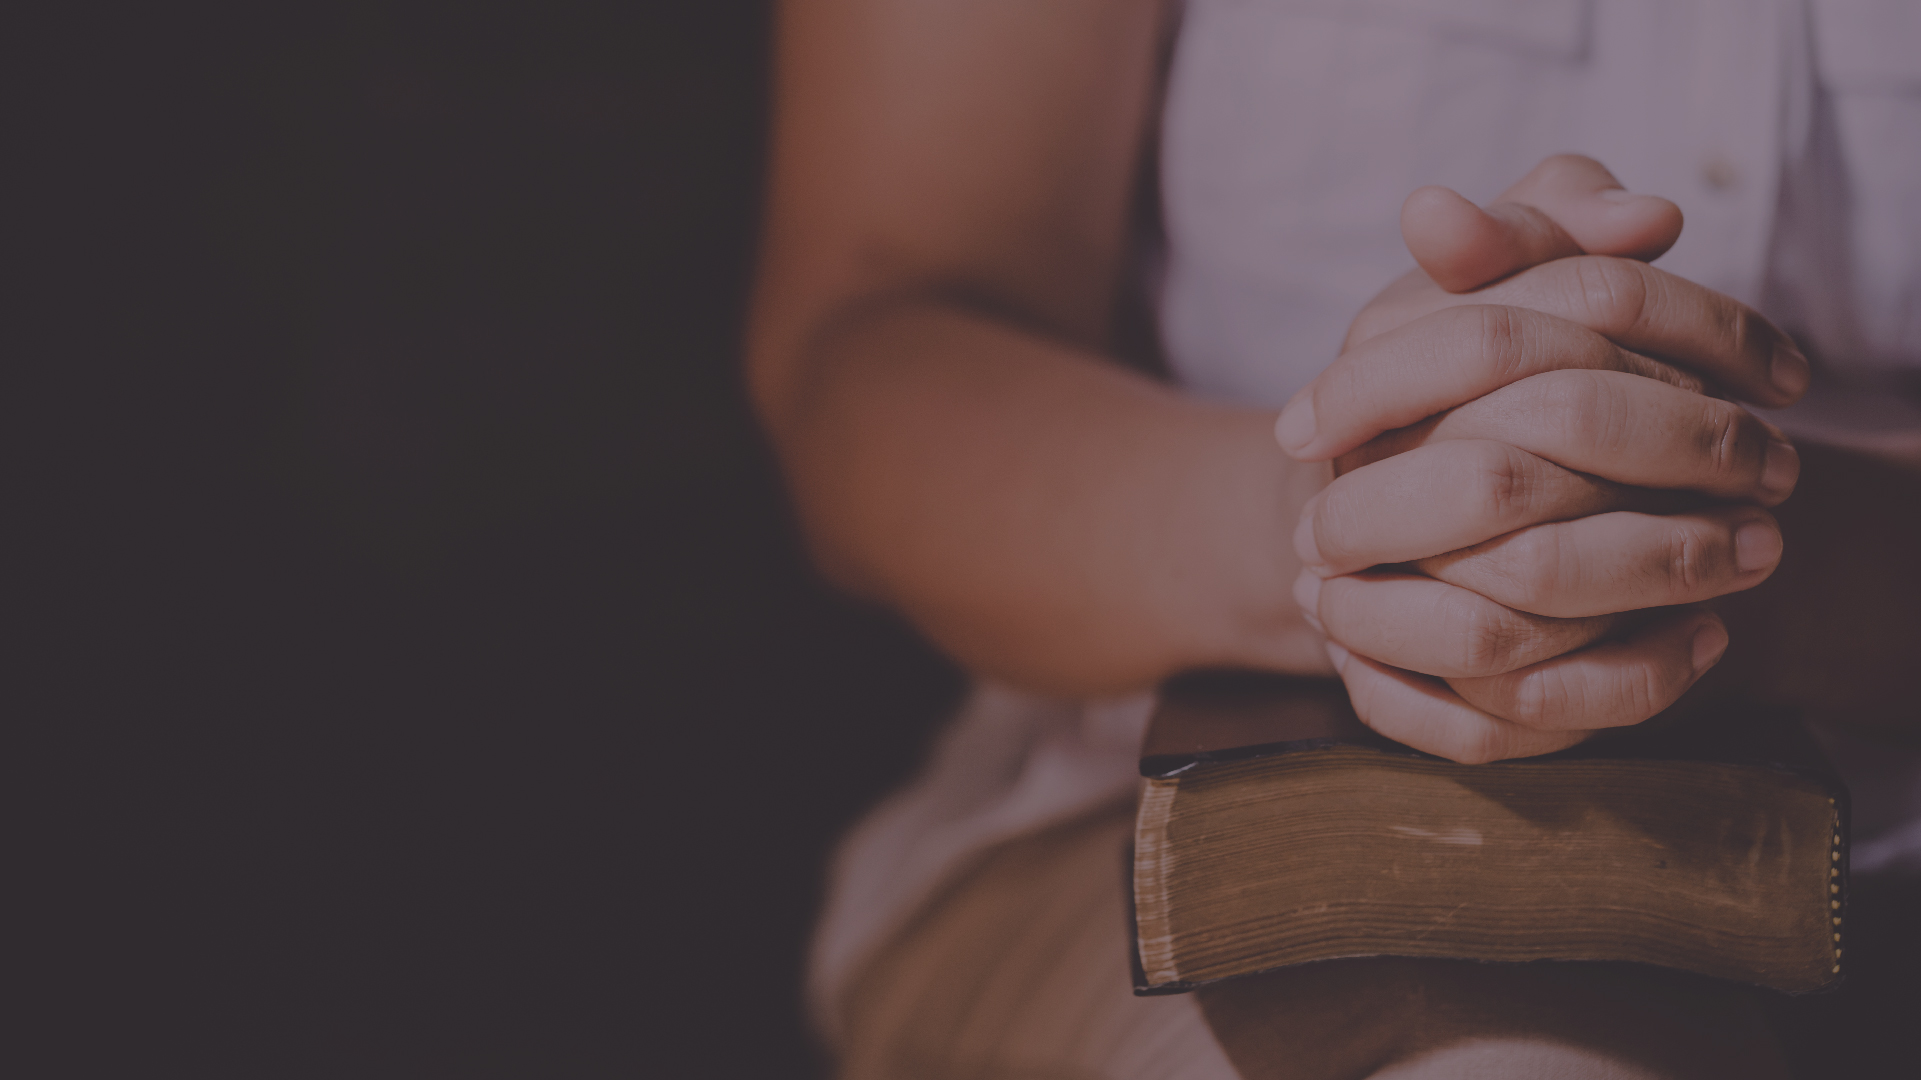 Artículo | Confiar en que Dios convierta todas las crisis en bendiciones